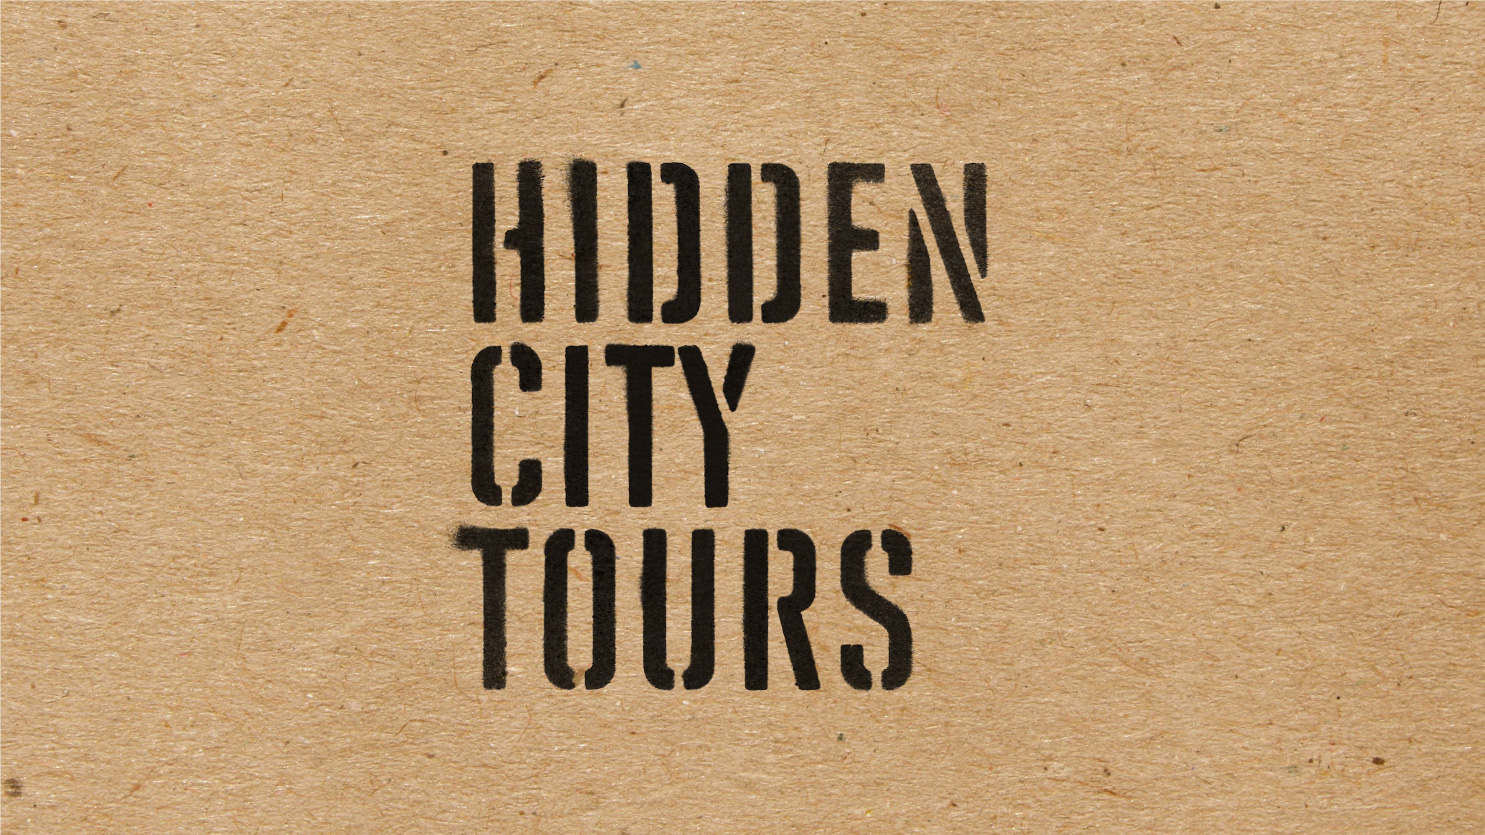 Hidden City Tours project